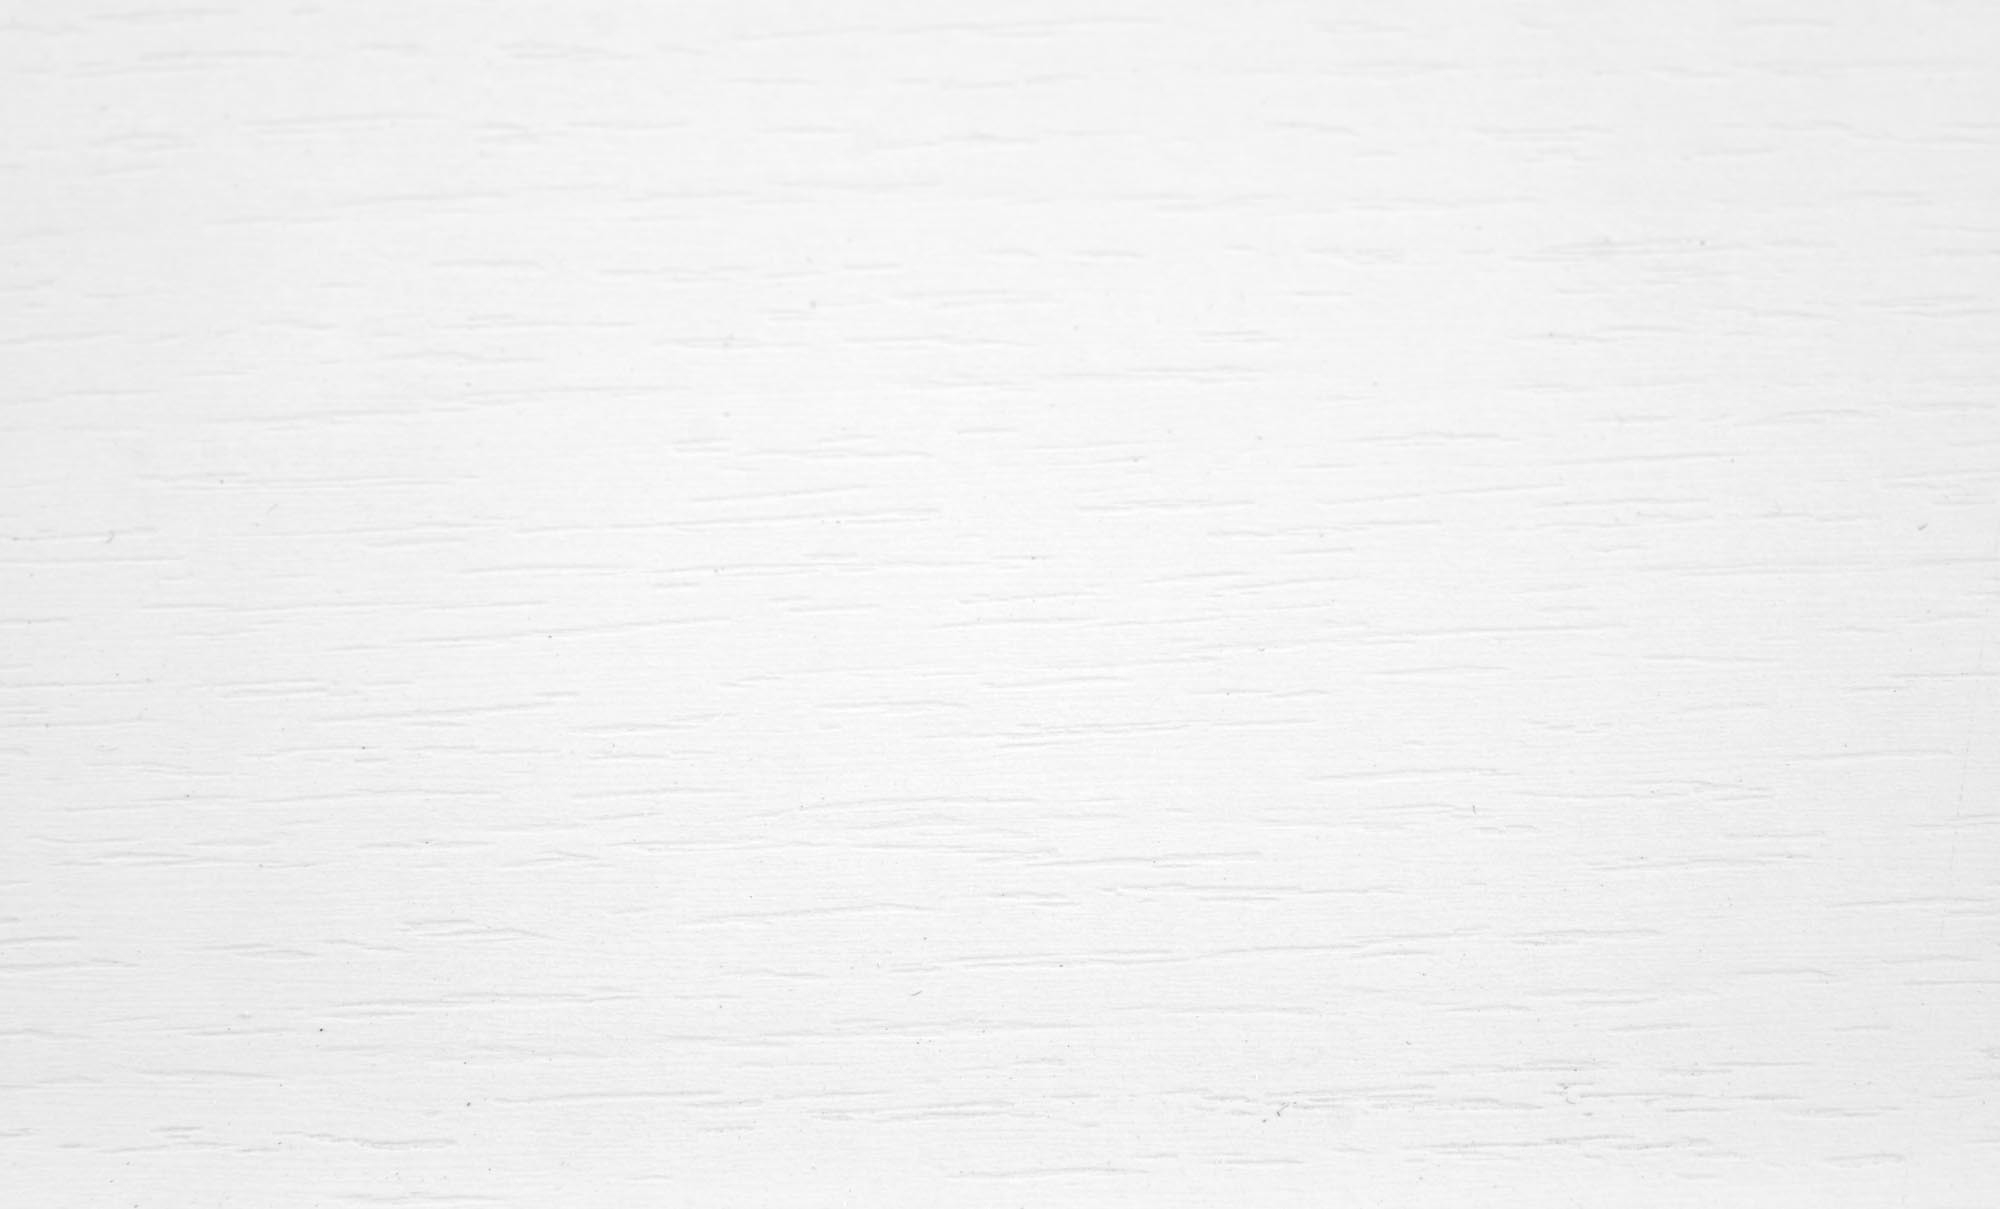 RINGO stół kolor blat - biały, nogi - biały (102-142x102x76 cm)